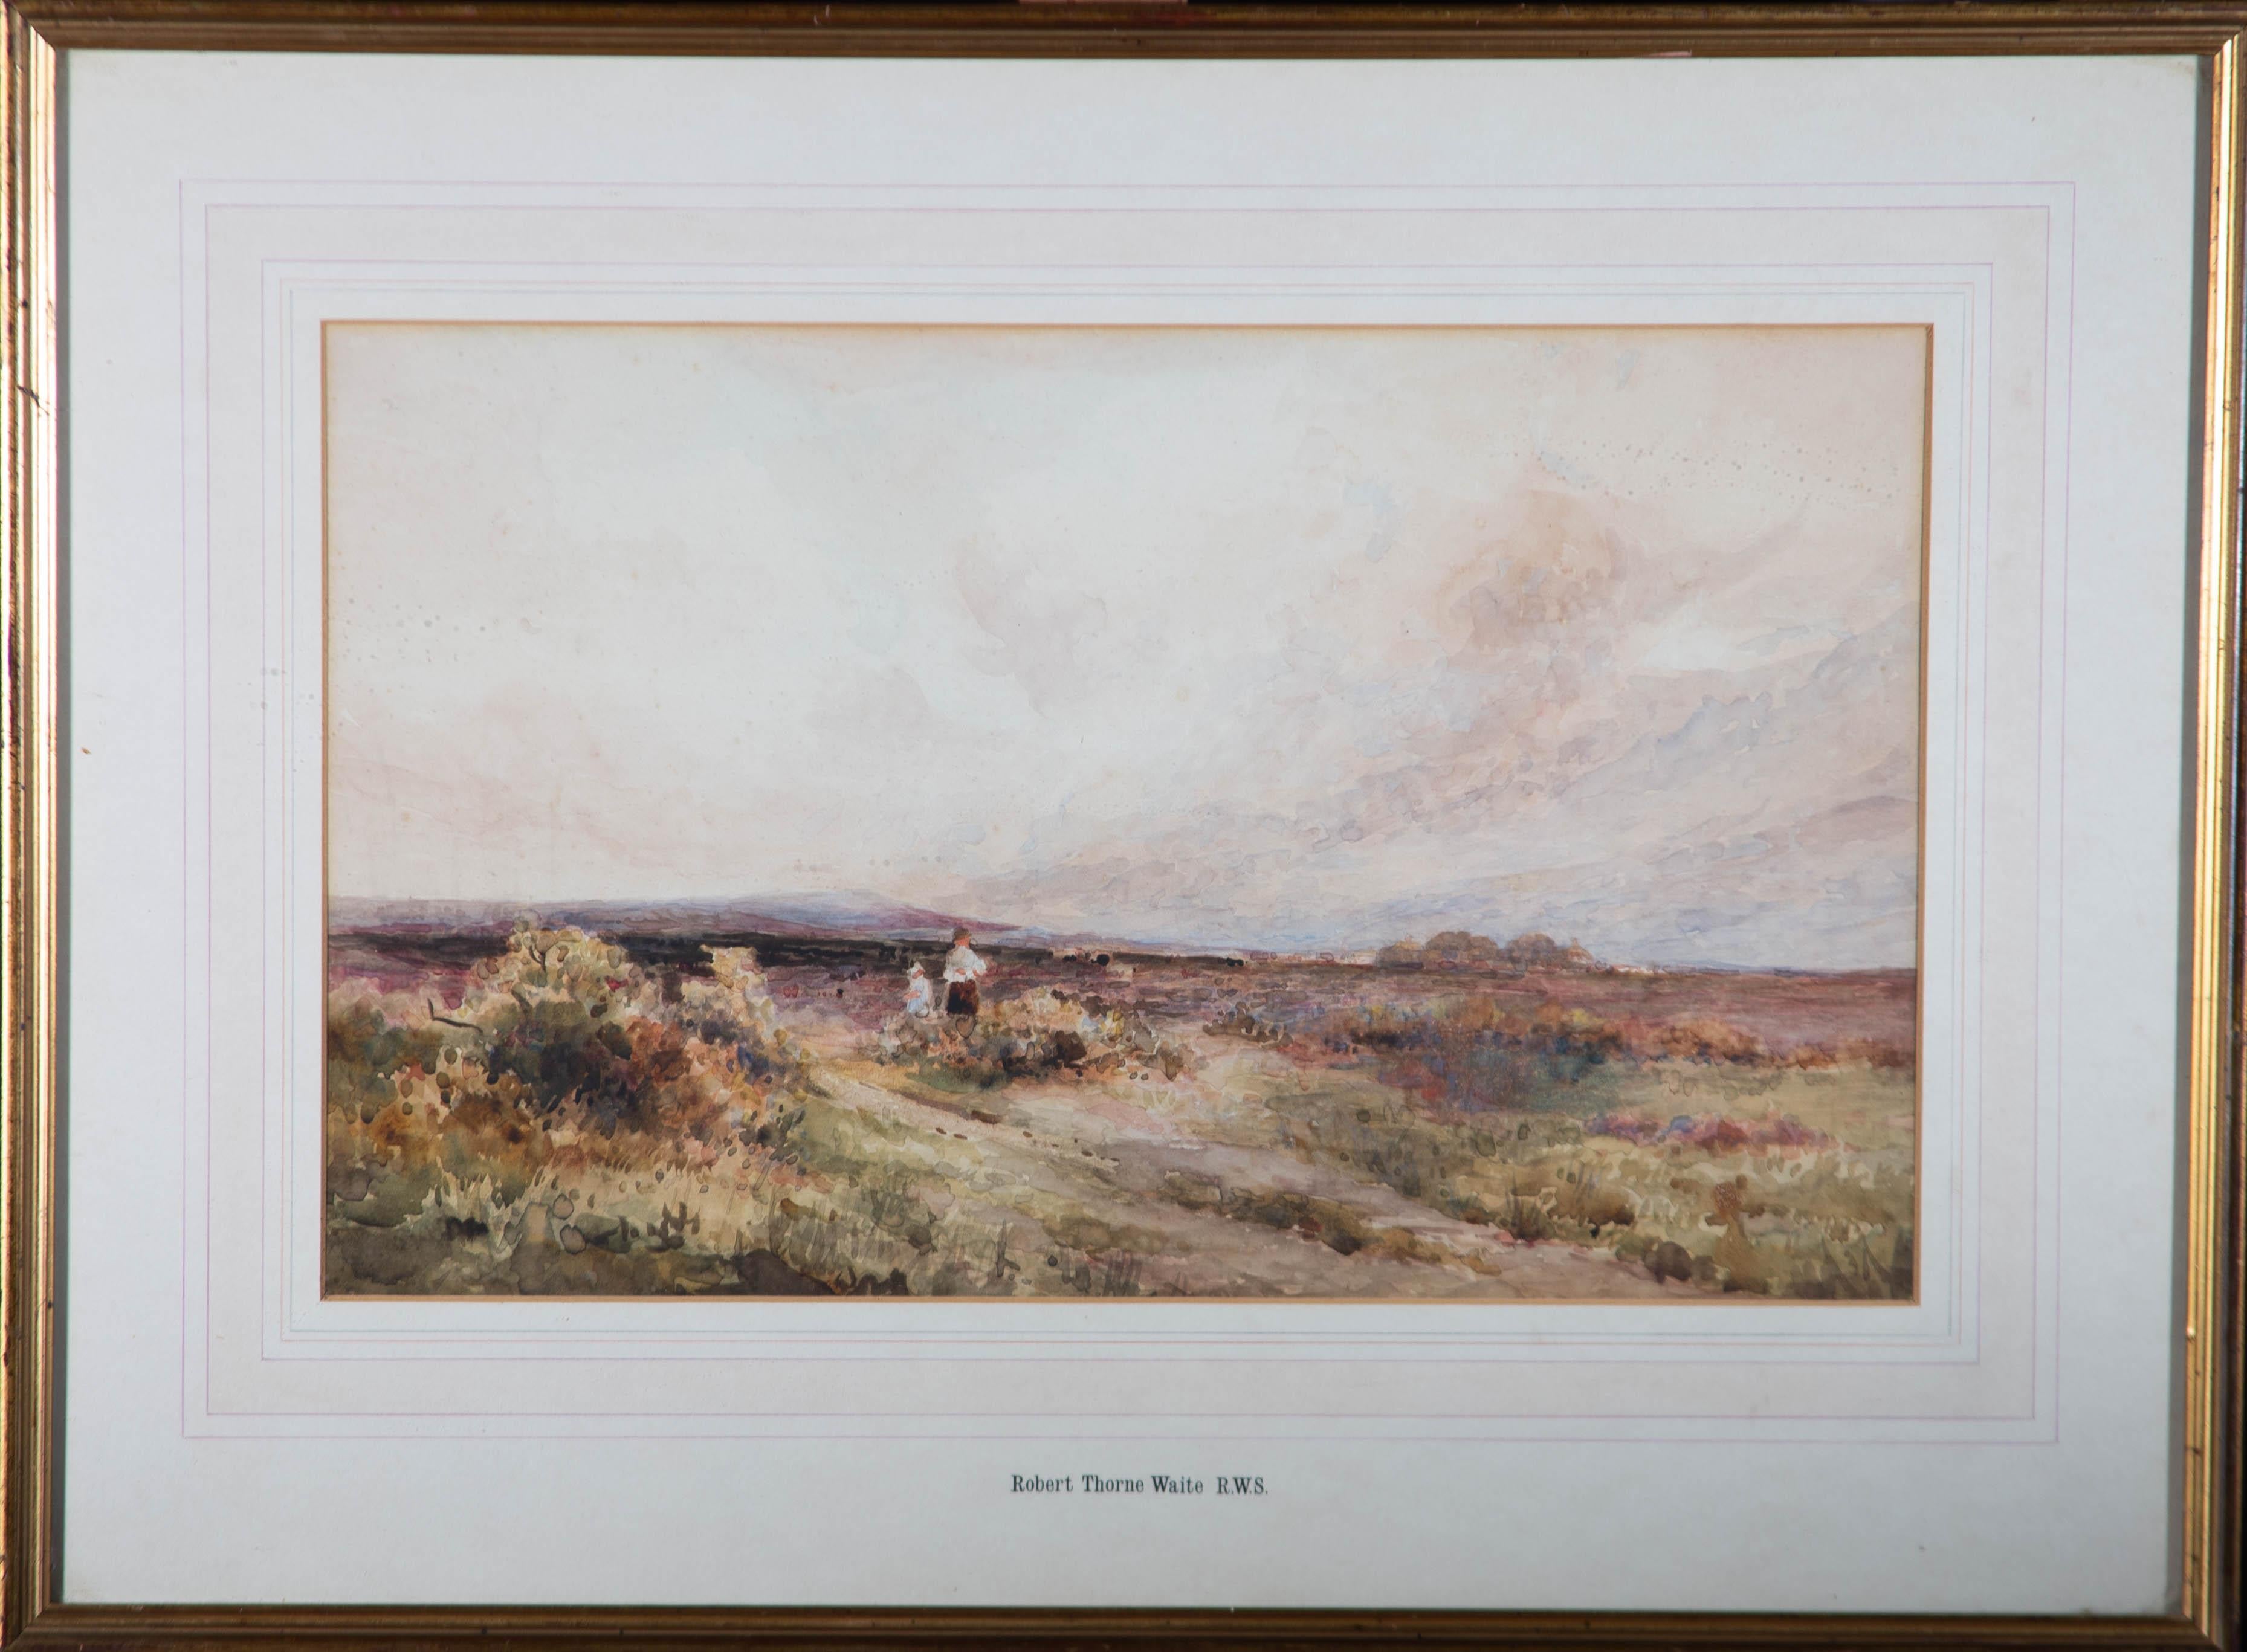 Unknown Landscape Art - Attrib. Robert Thorne Waite RWS (1842-1935) - Watercolour, Figures in Landscape